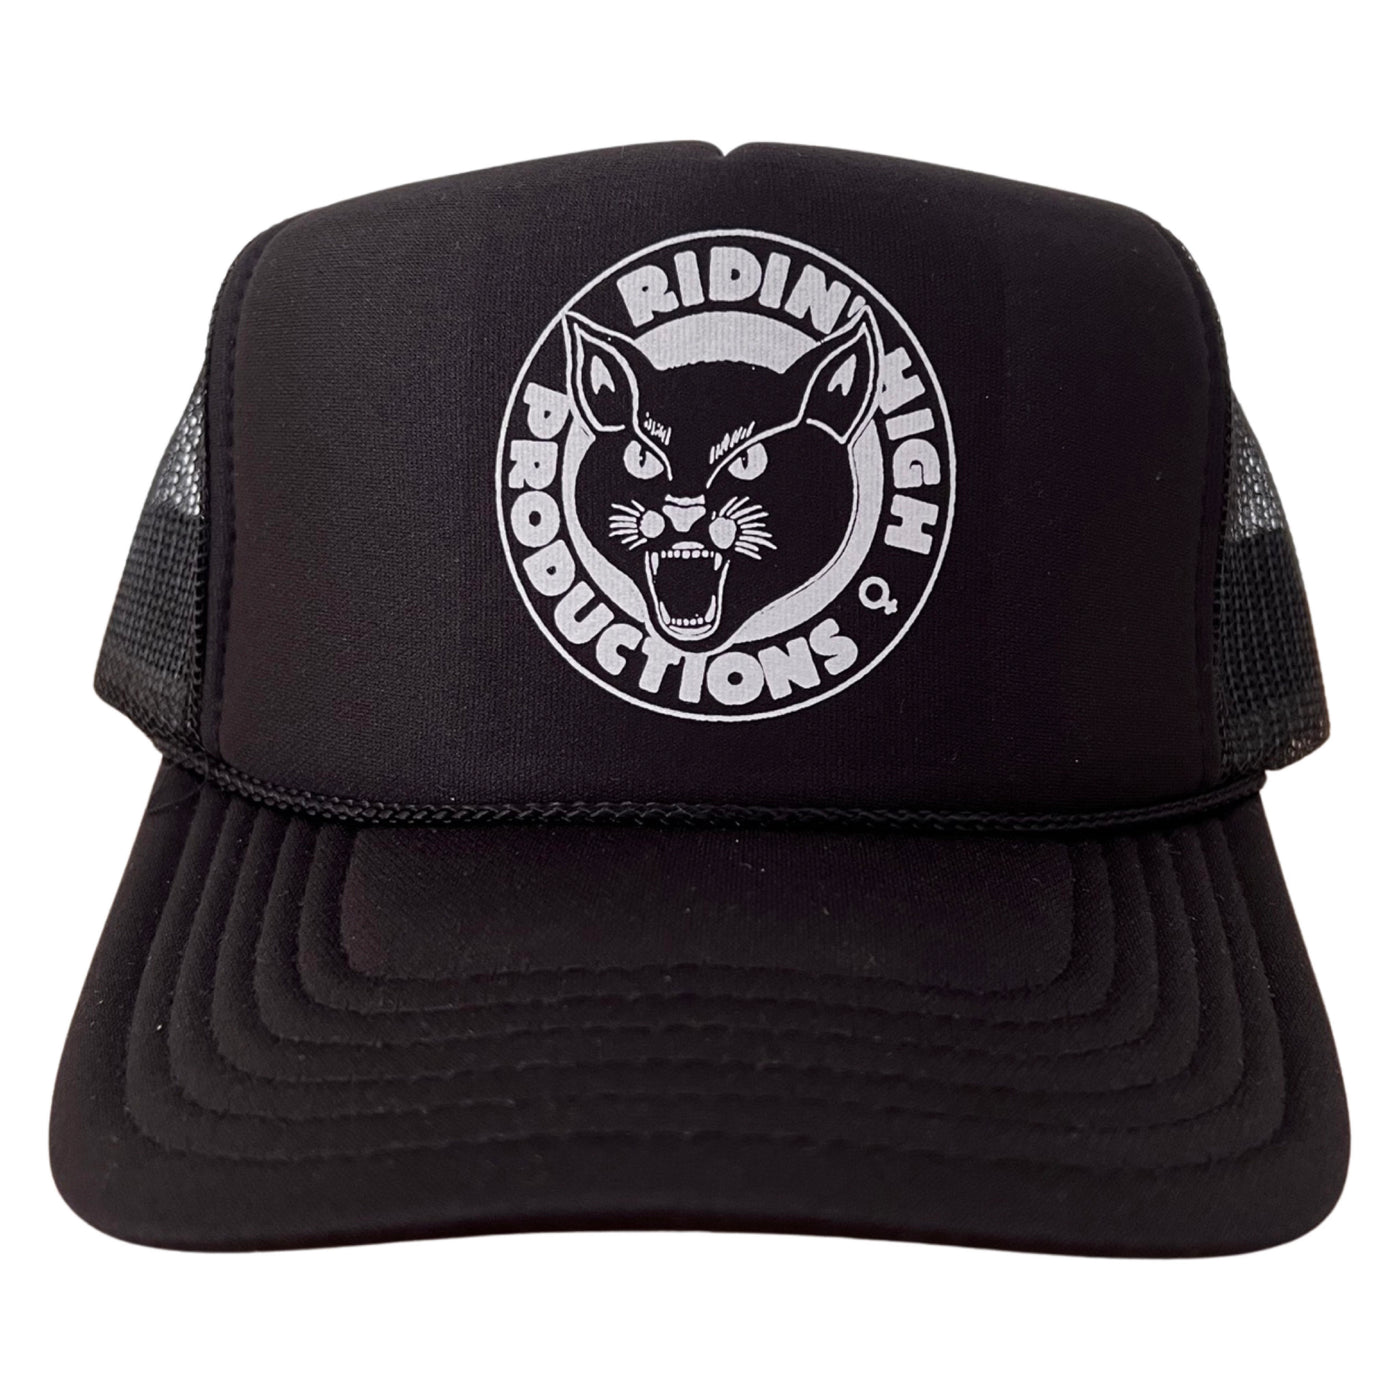 Ridin' High Productions Logo Foam Trucker Hat